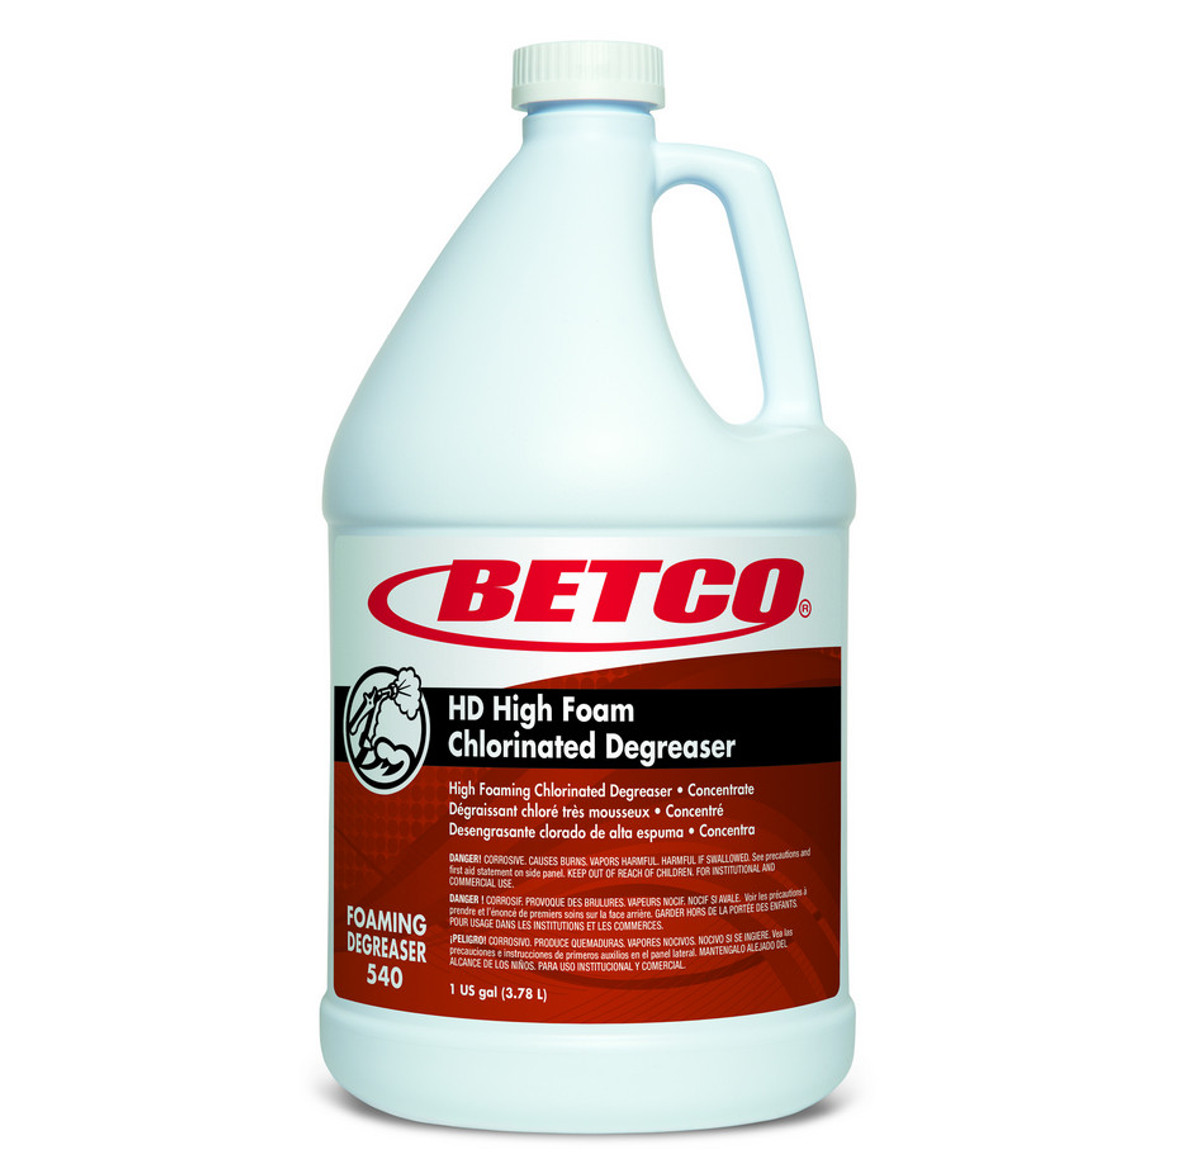 Betco HD High Foam Chlorinated Degreaser, 1 Gallon, 4 Per Case